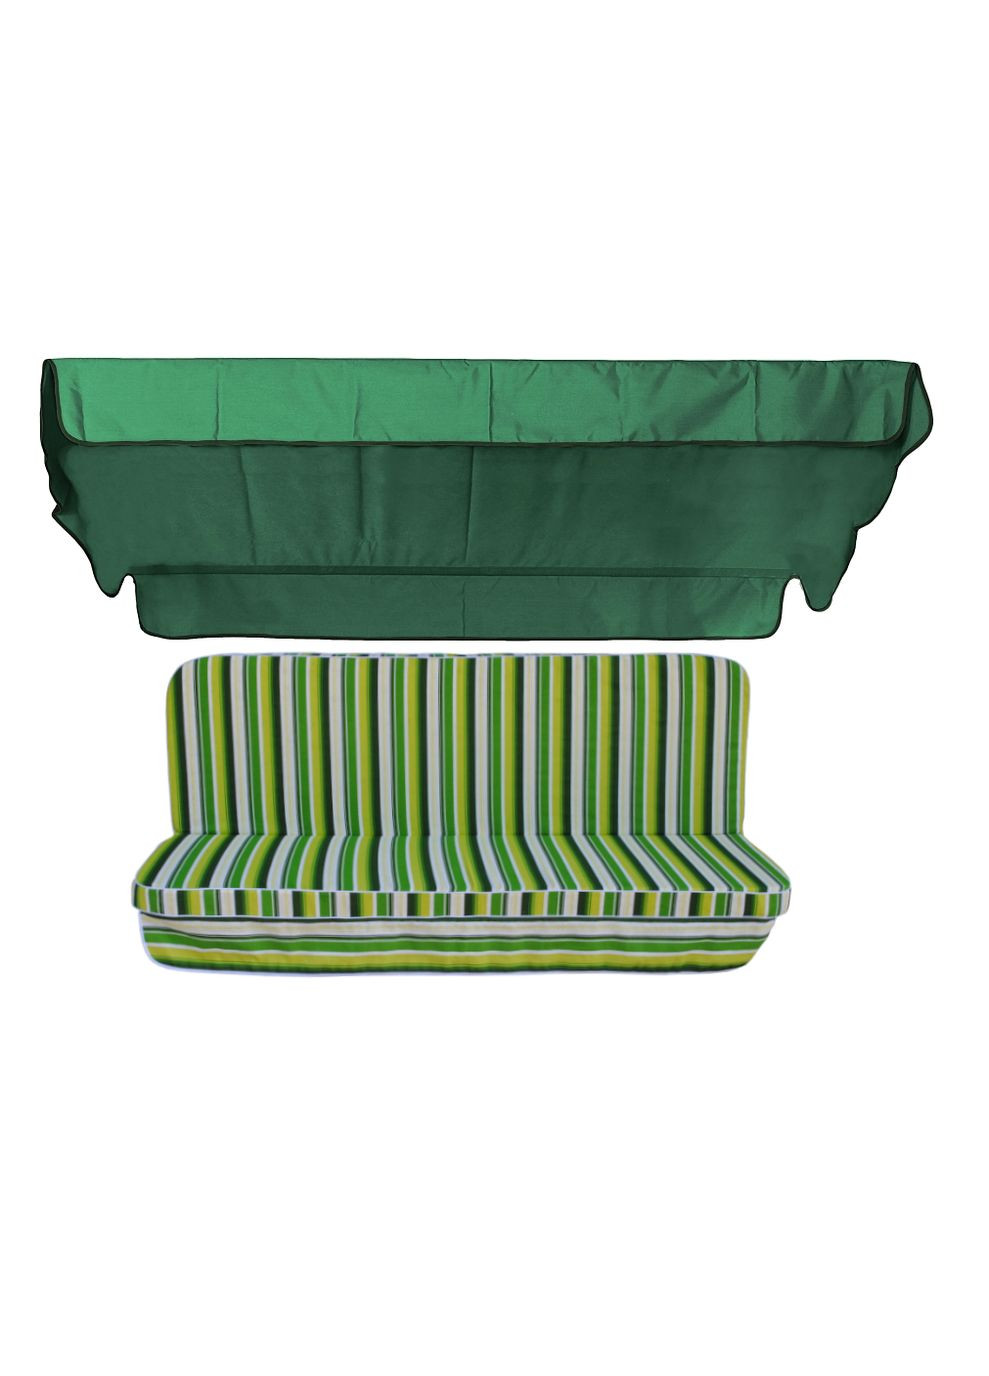 Комплект подушек для качелей Verrano 170x110x6 зеленый тент 120x200 eGarden (279784111)